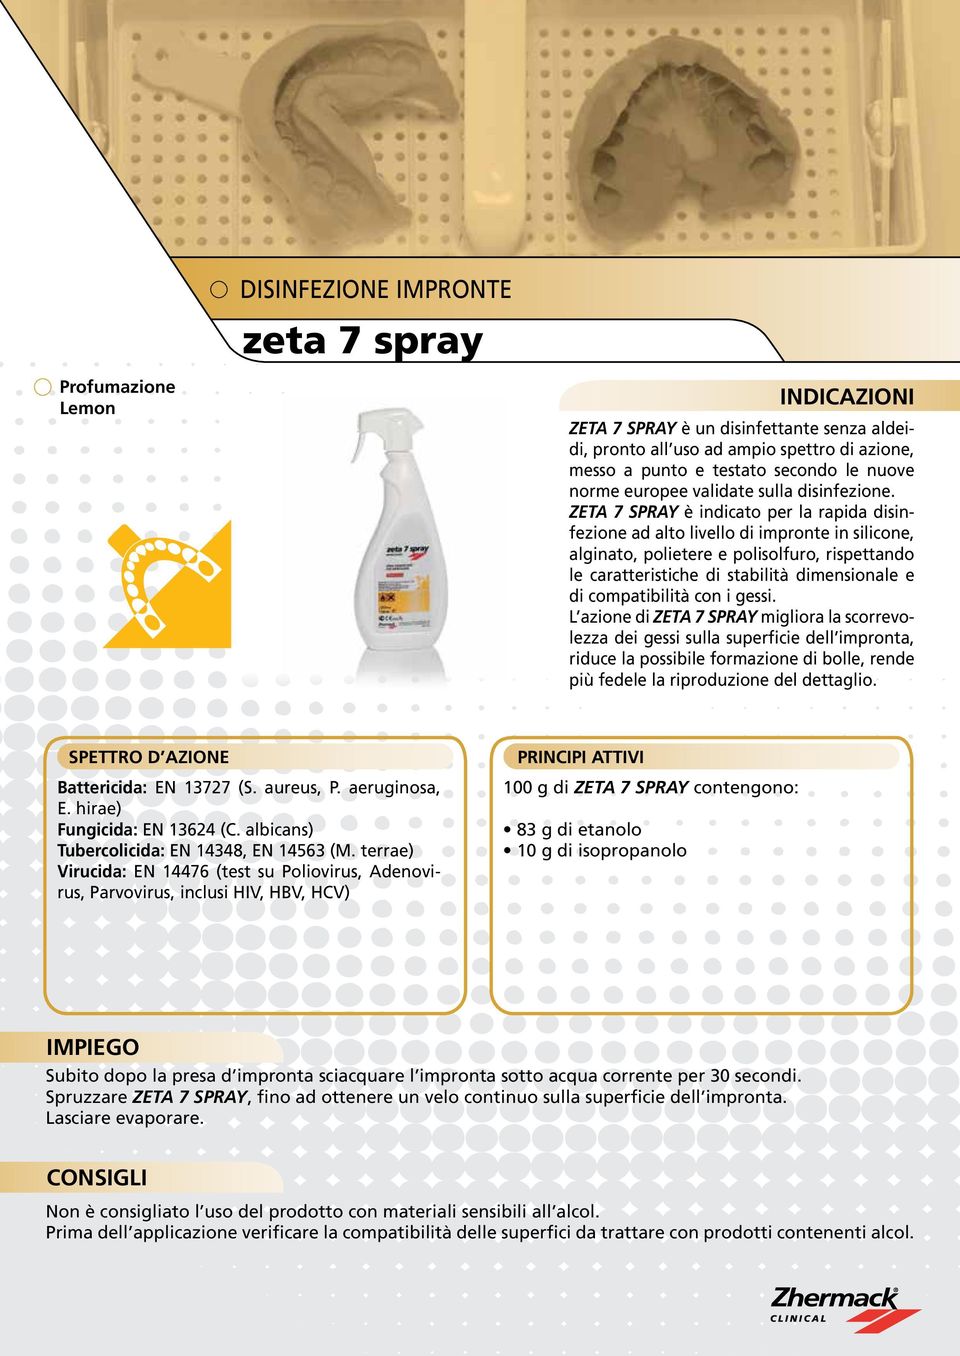 ZETA 7 SPRAY è indicato per la rapida disinfezione ad alto livello di impronte in silicone, alginato, polietere e polisolfuro, rispettando le caratteristiche di stabilità dimensionale e di